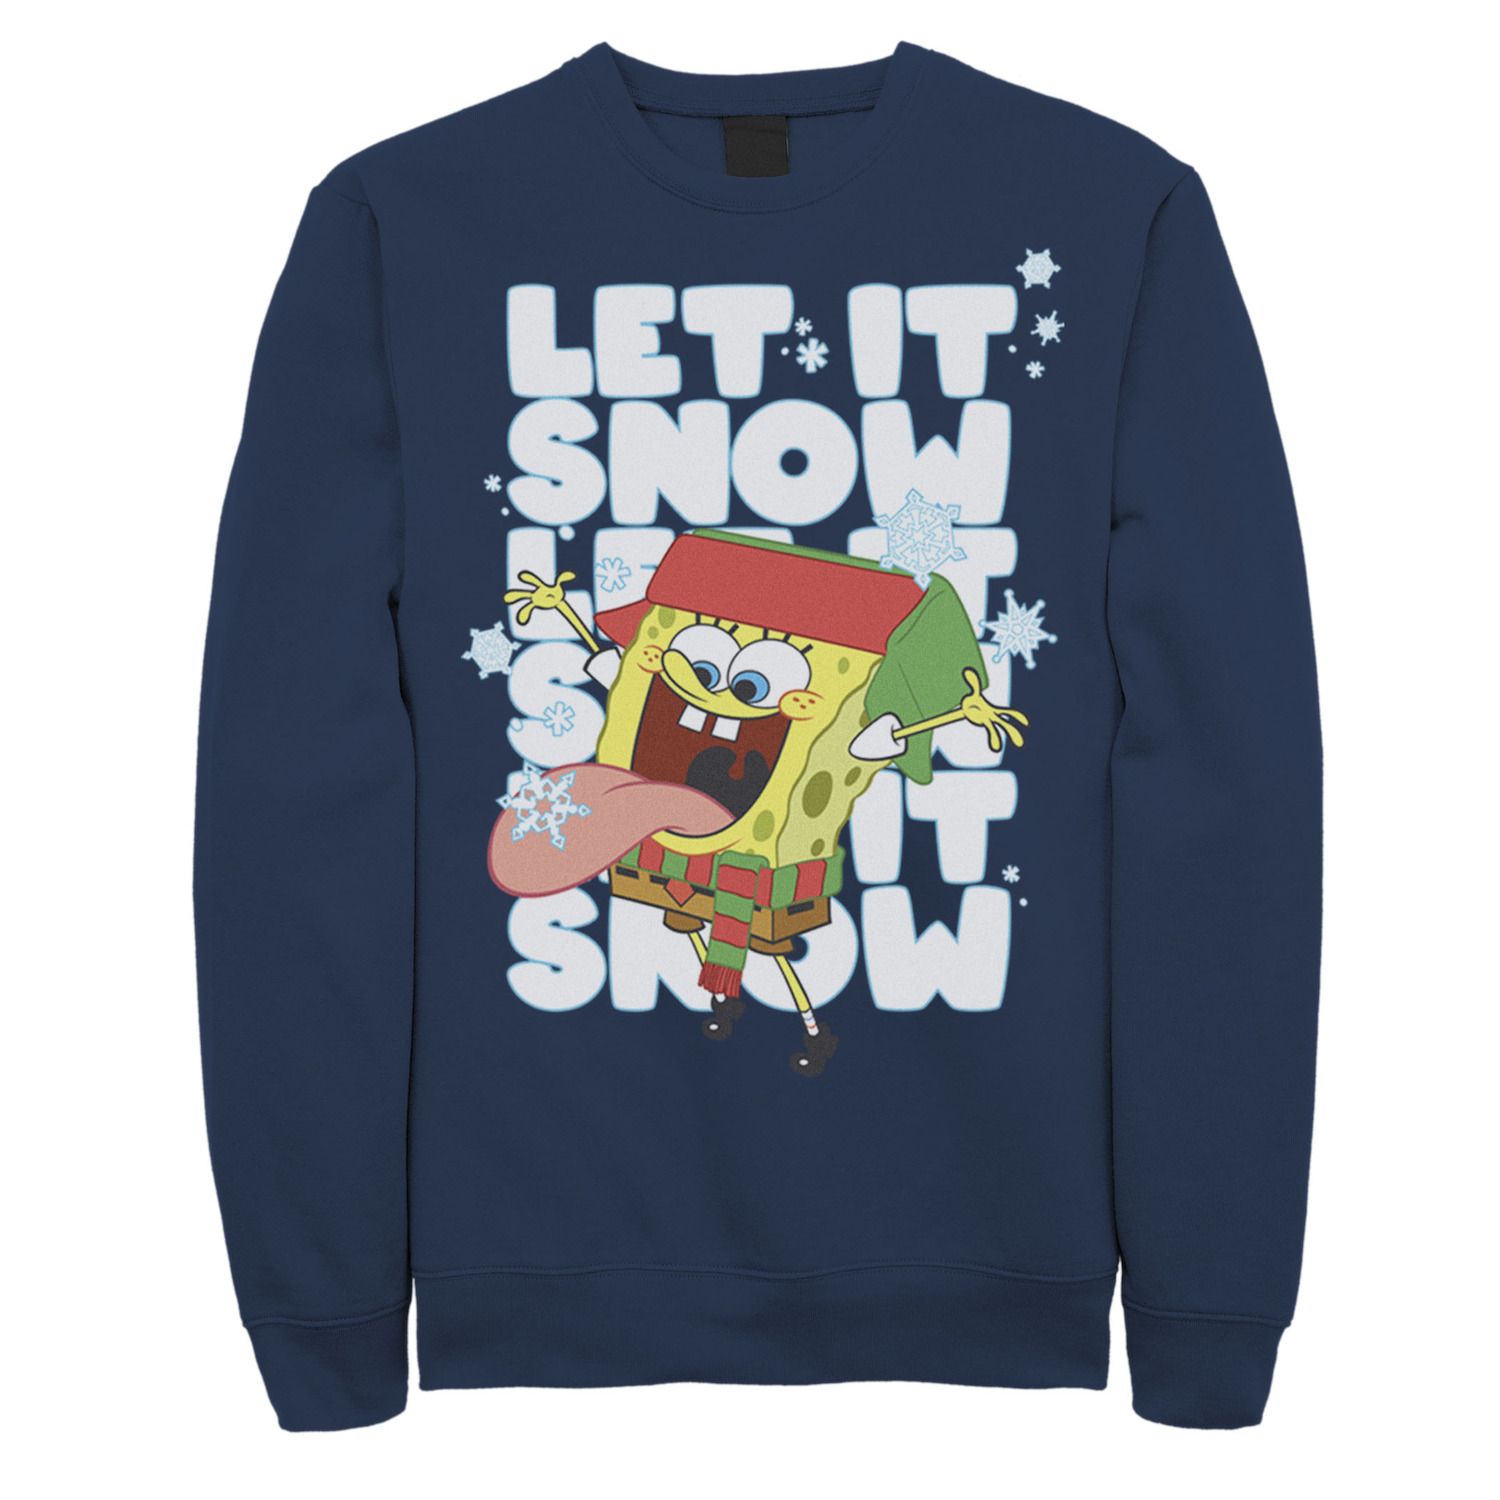 Мужские квадратные штаны Губка Боб Let It Snow Let It Snow Let It Snow флисовый пуловер с графическим рисунком Nickelodeon, синий